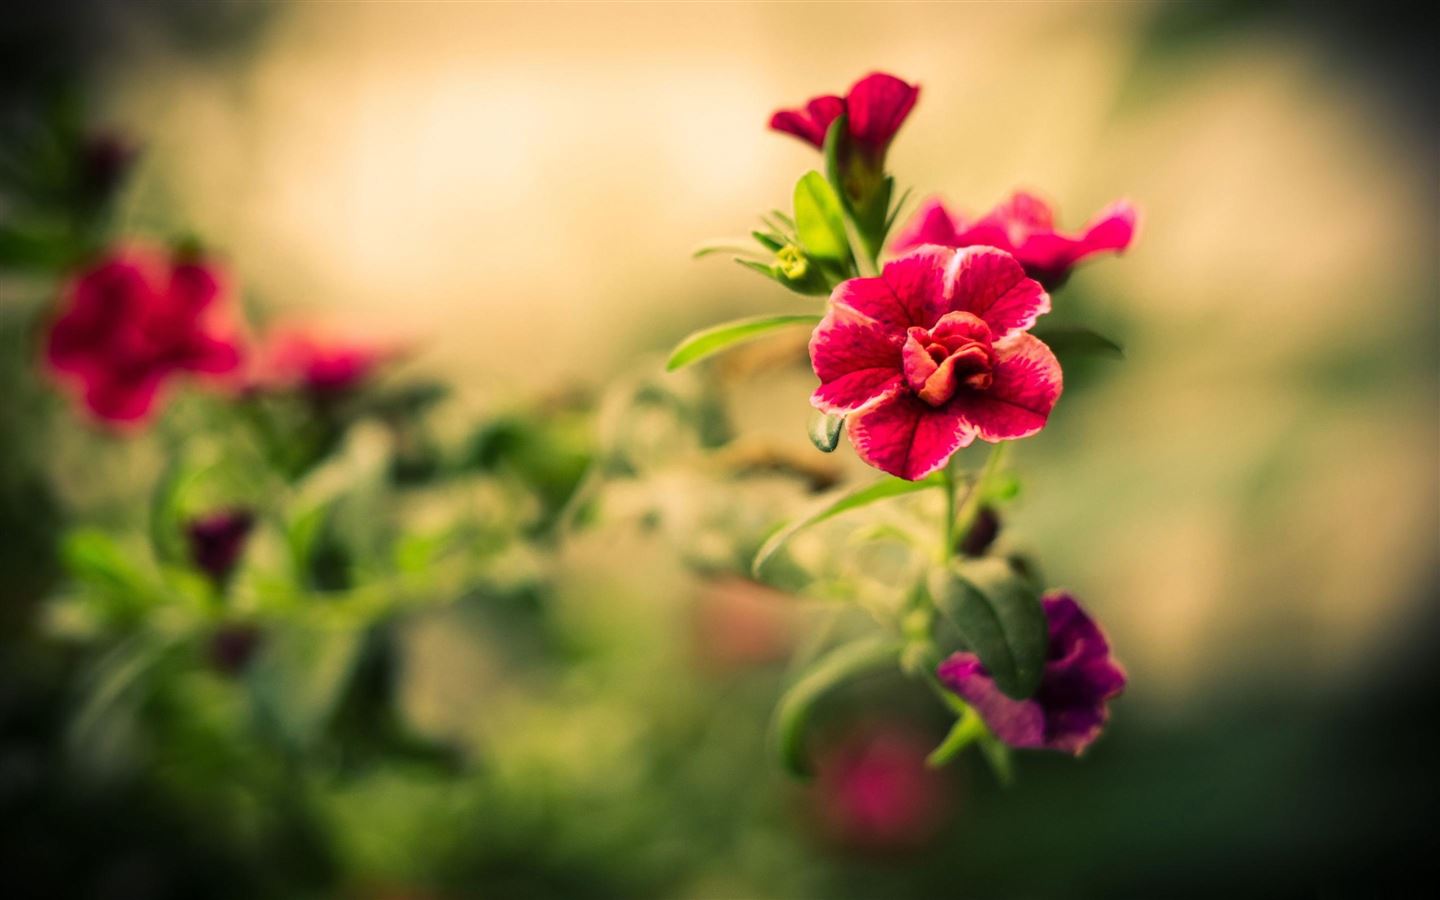 Loại hoa đỏ rực này mang đến sự tươi mới và đầy mê hoặc. Chúng có thể làm cho ngày của bạn trở nên sống động và đầy màu sắc. Hãy chiêm ngưỡng sự đẹp tuyệt vời của chúng trong một bức ảnh đầy mê hoặc.